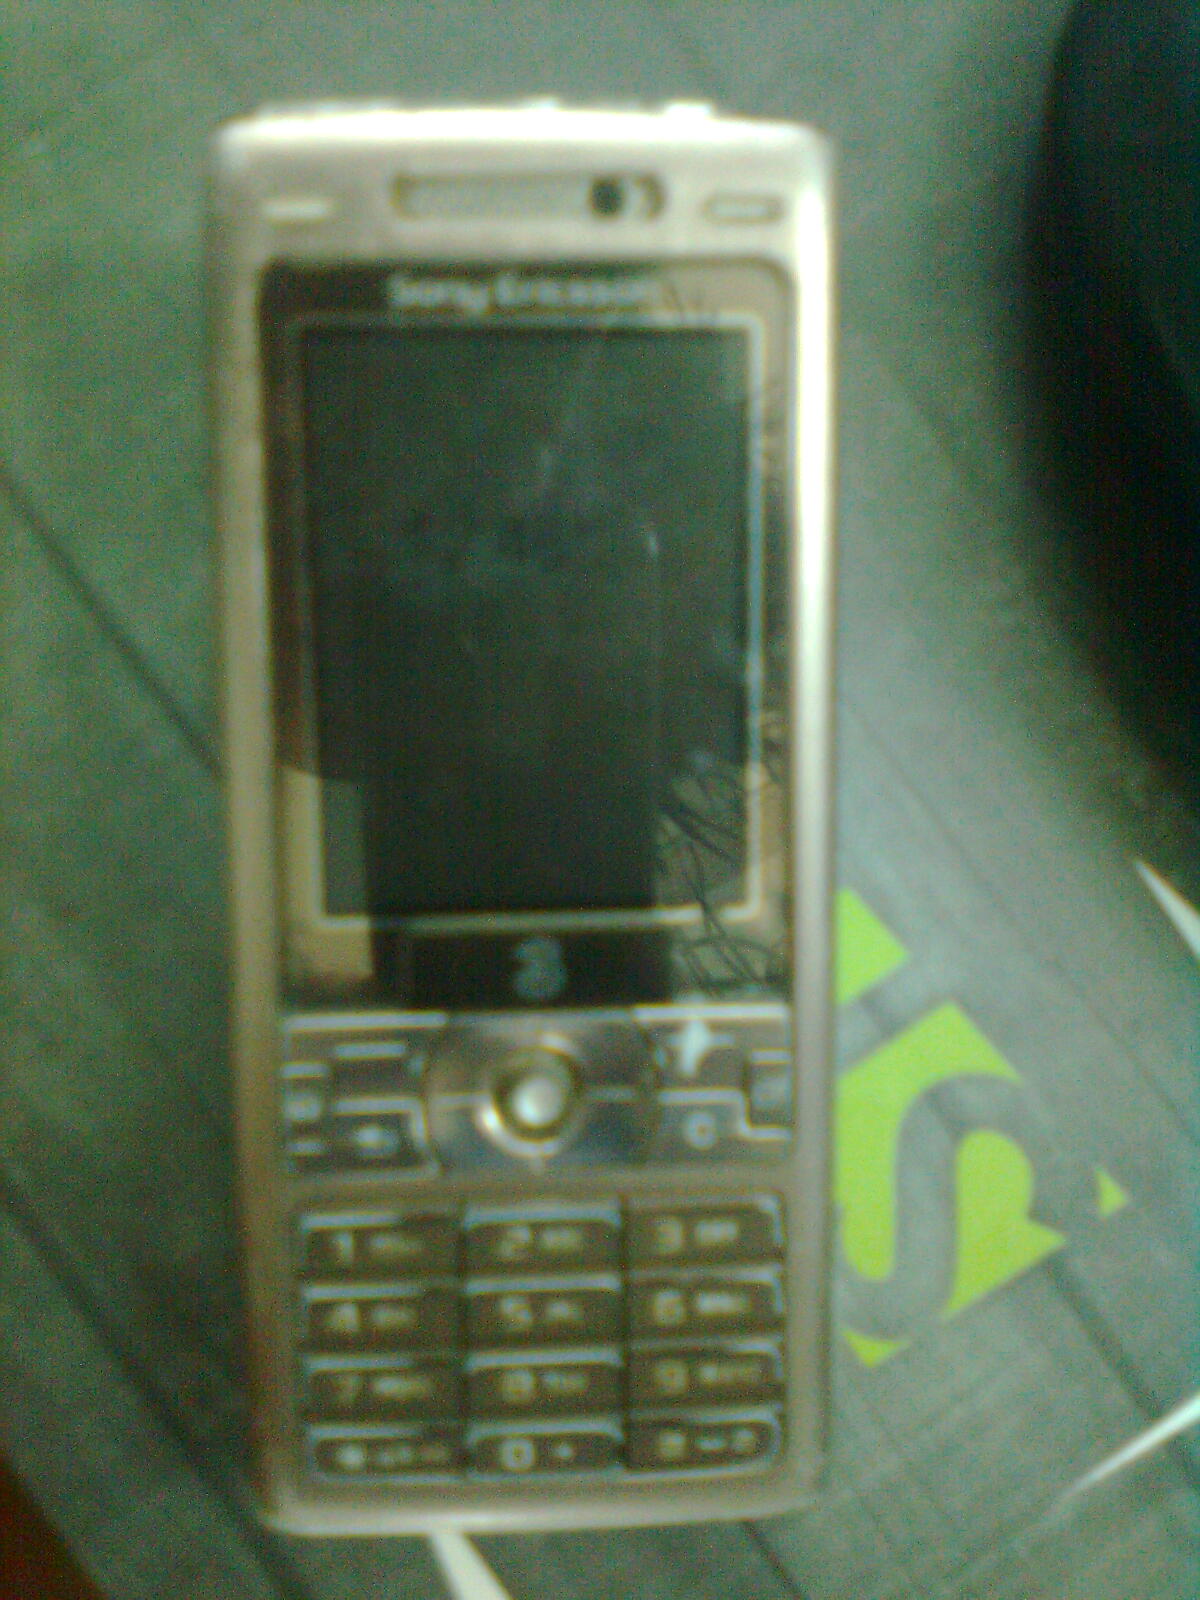 Sony Ericsson k800i large image 1